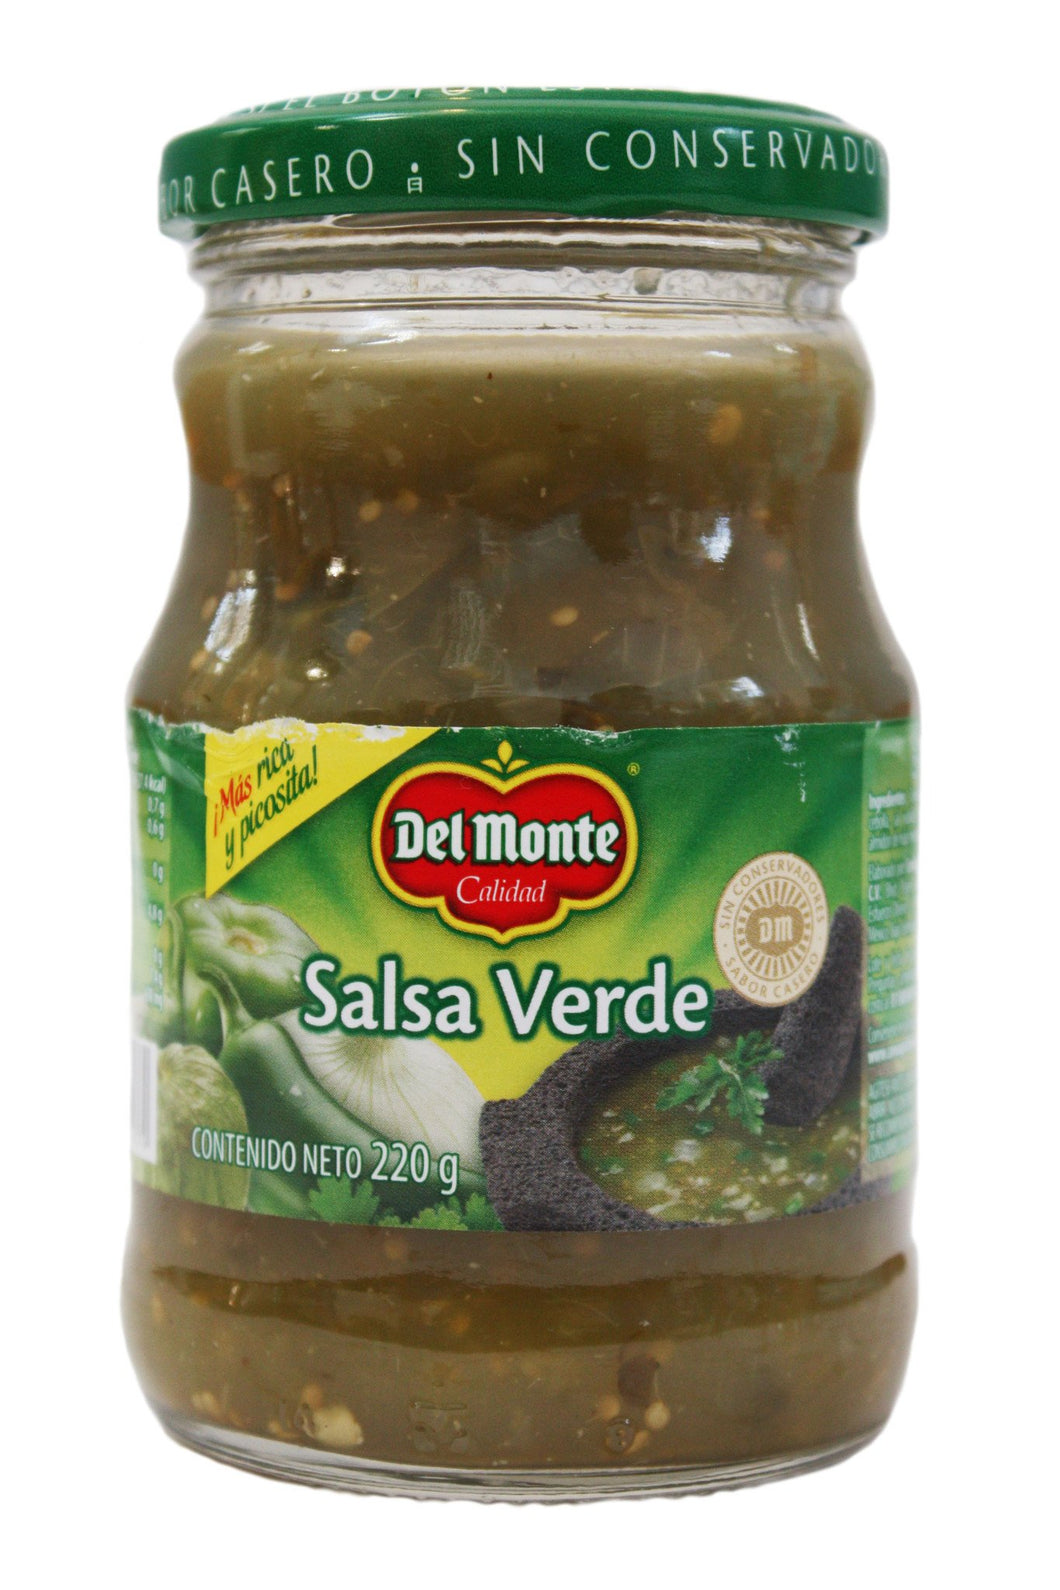 Media Caja Salsa Verde Del Monte de 220 grs con 12 piezas - Conagra-Salsas-Conagra-MayoreoTotal